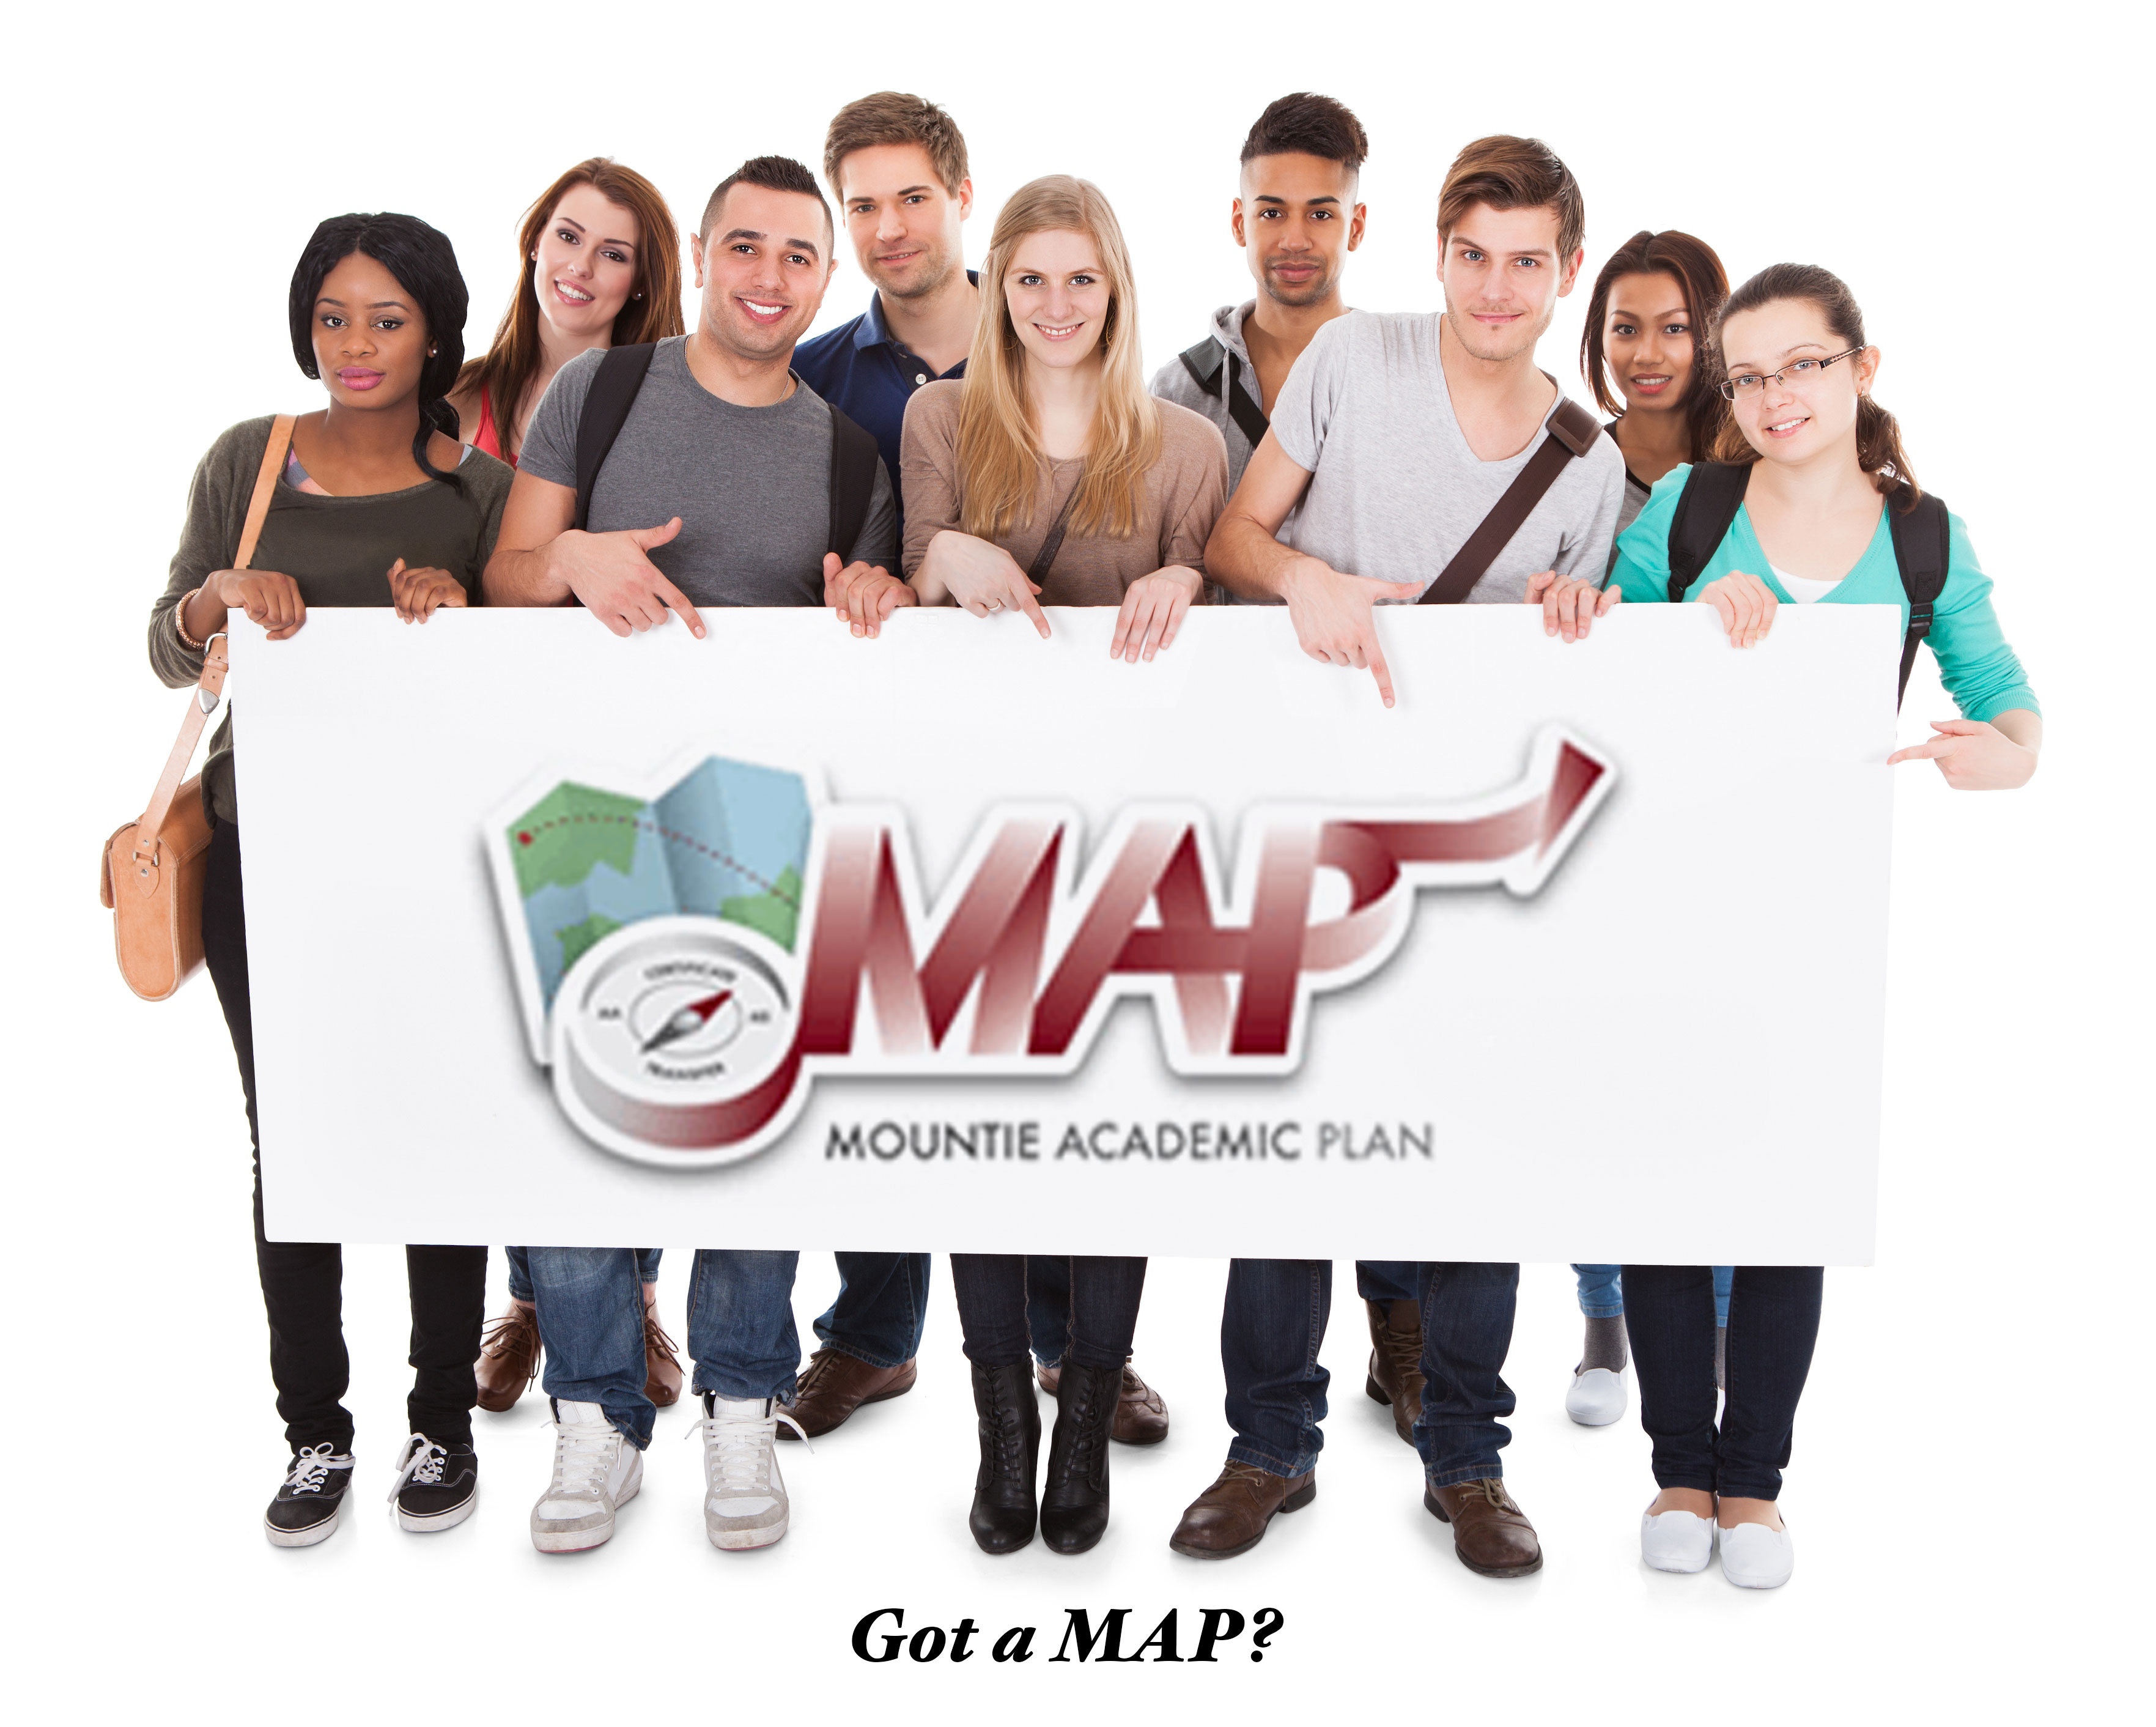 Got MAP? Mountie Academic Plan